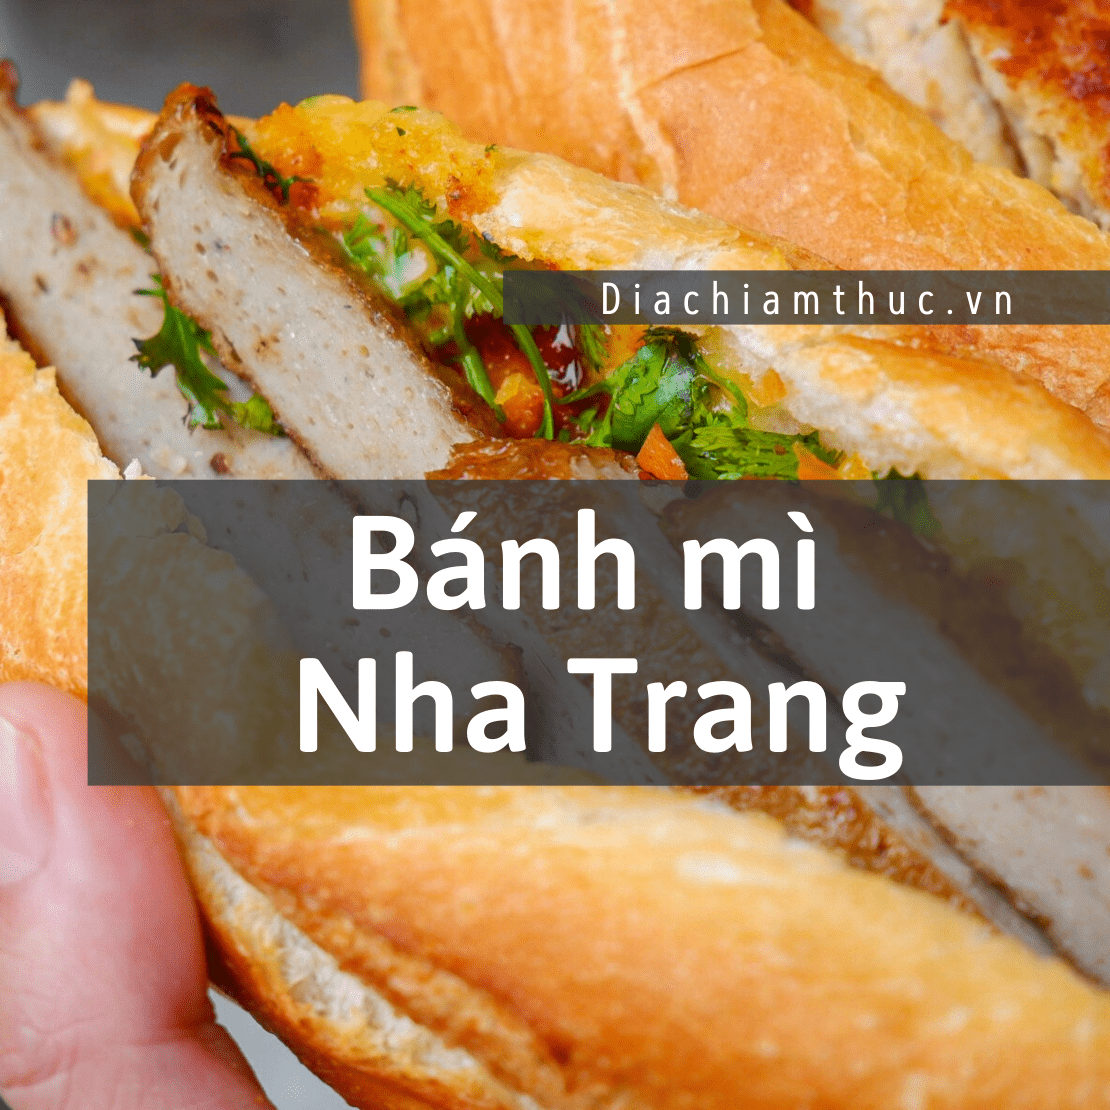 Bánh mì Nha Trang